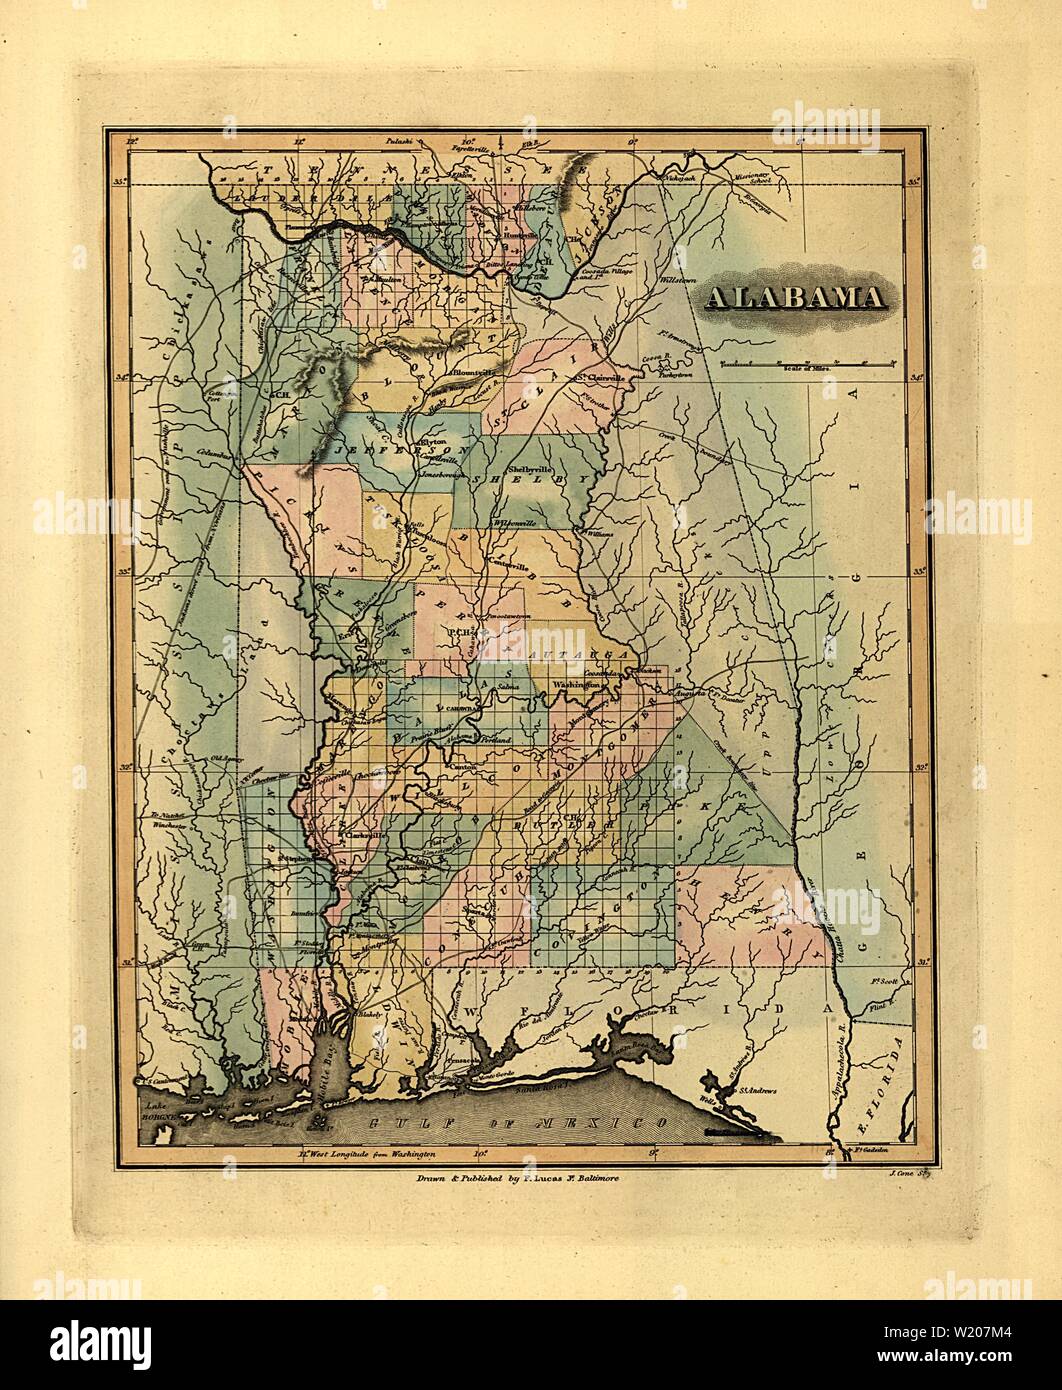 1826 Karte von Alabama - Klassiker Antiquarische Karte von Lucas Stockfoto